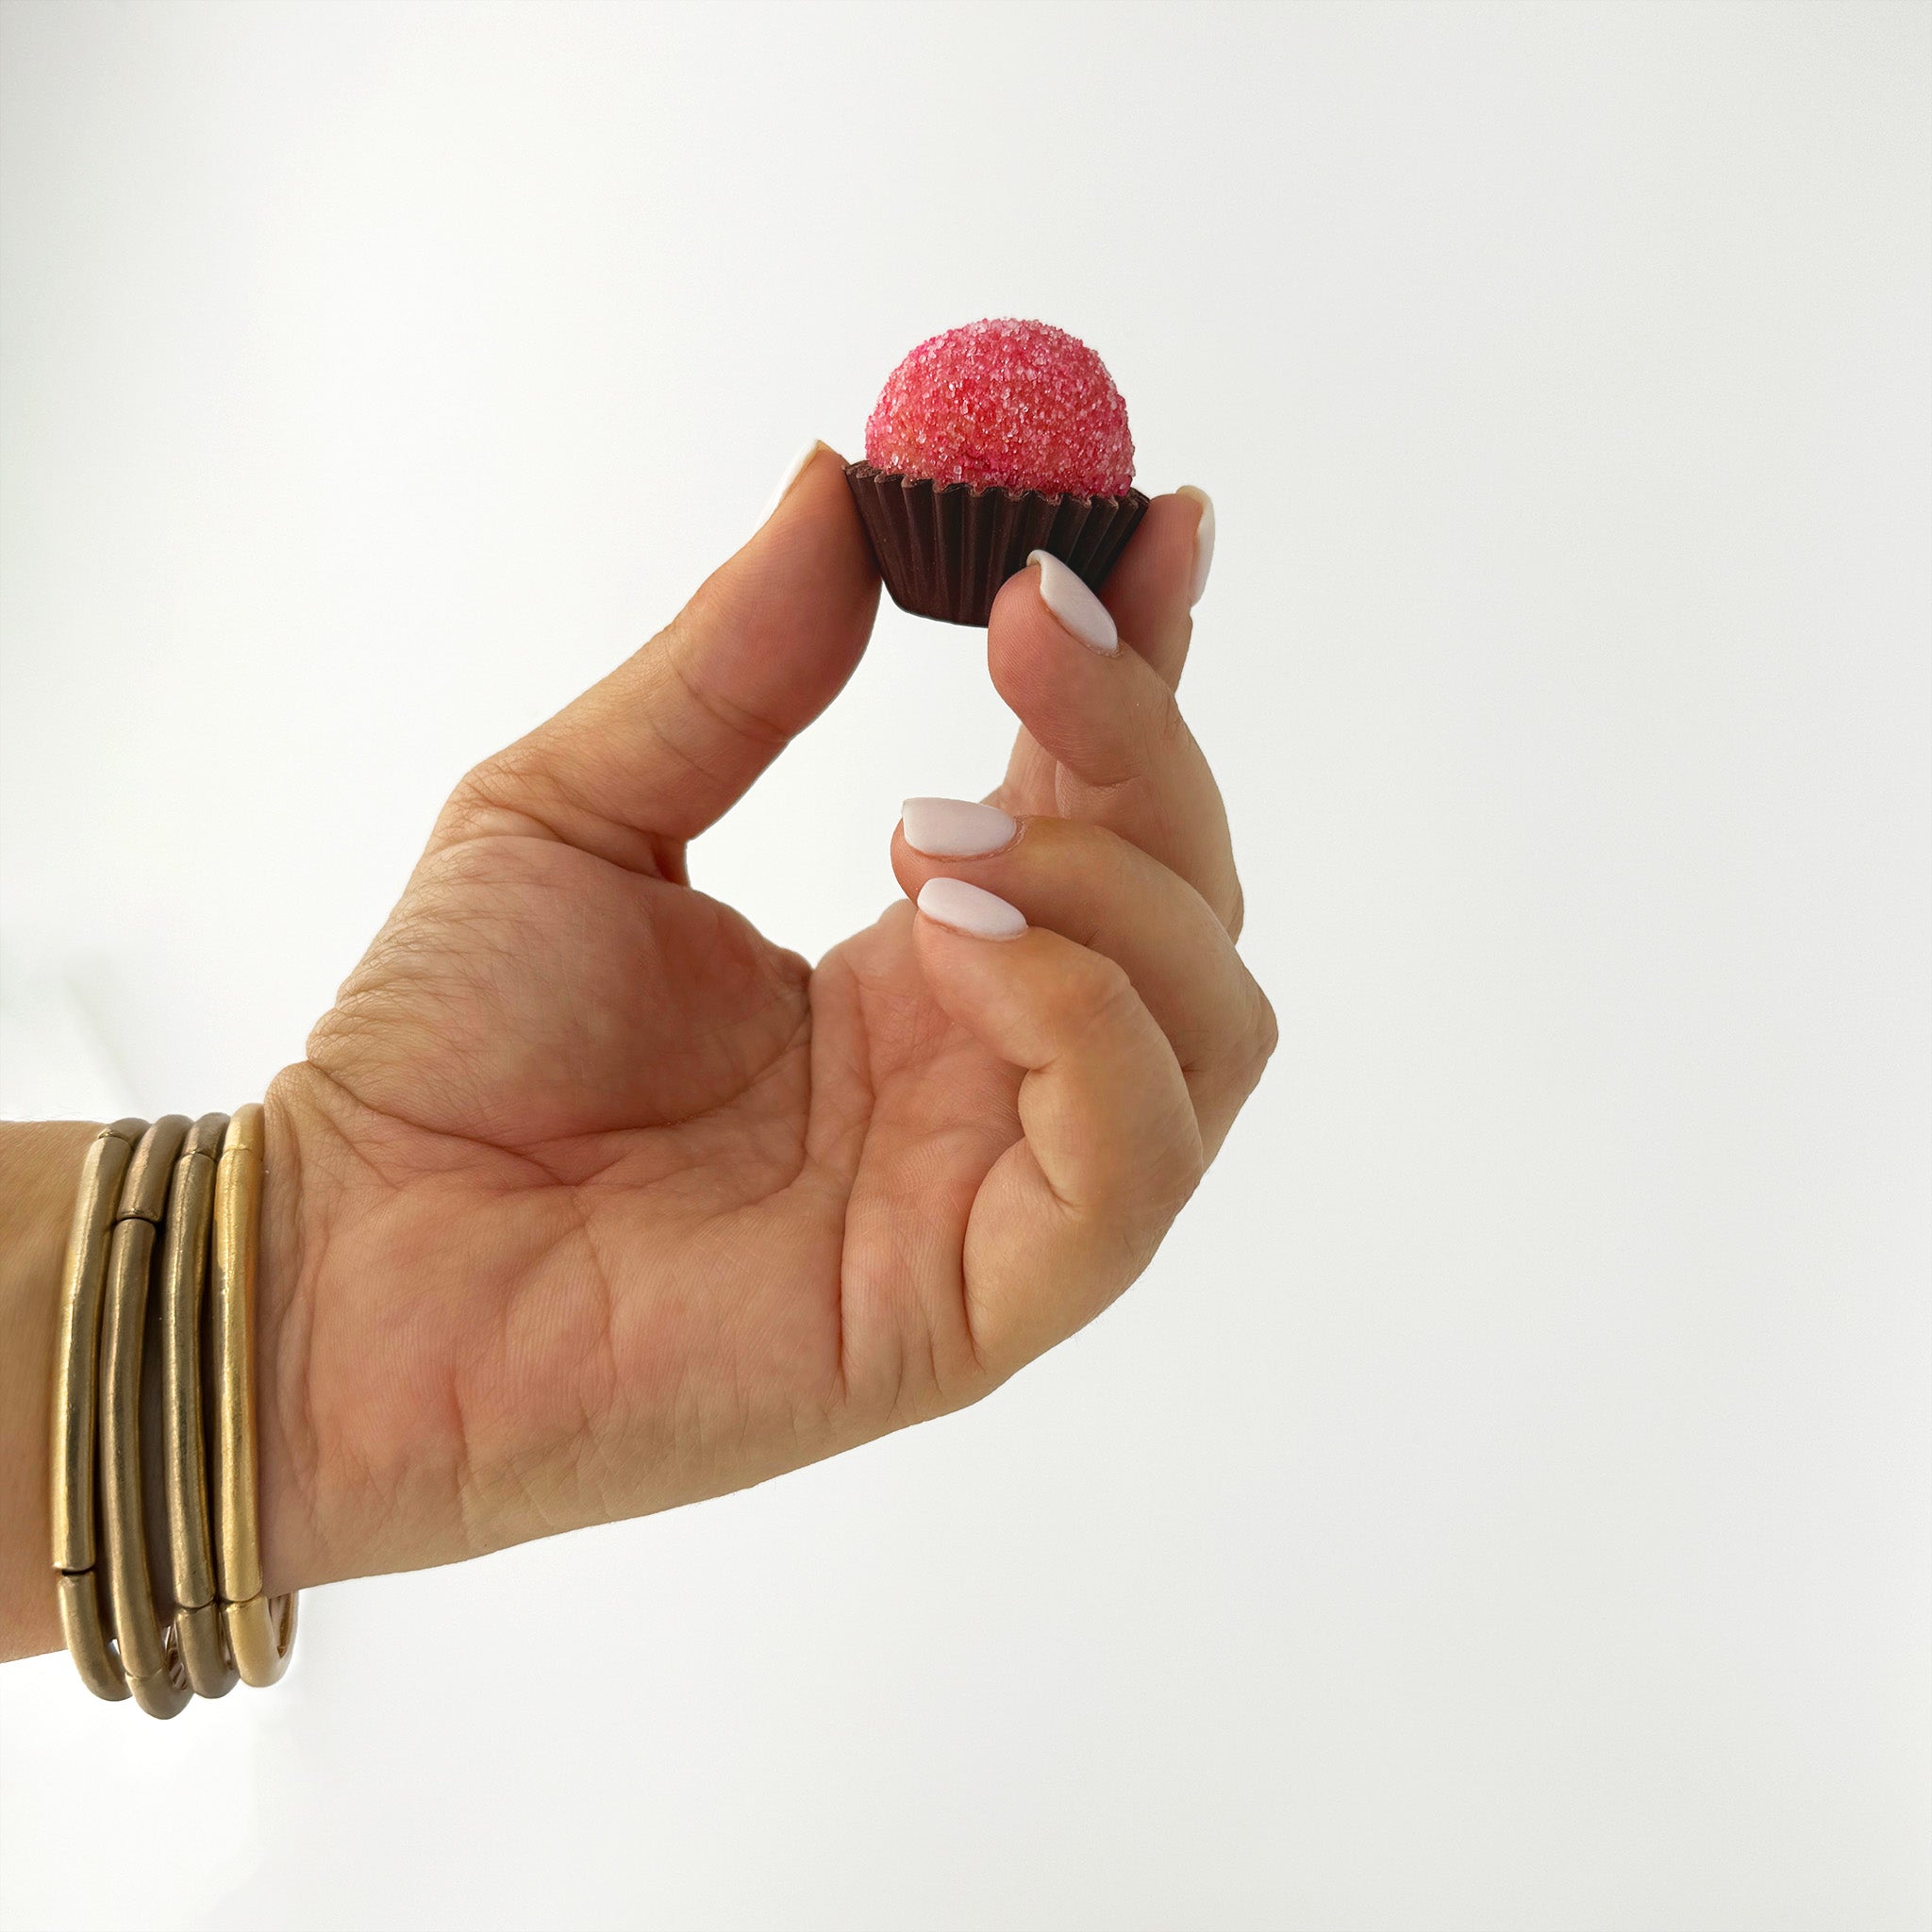 Hand holding a strawberry brigadeiro